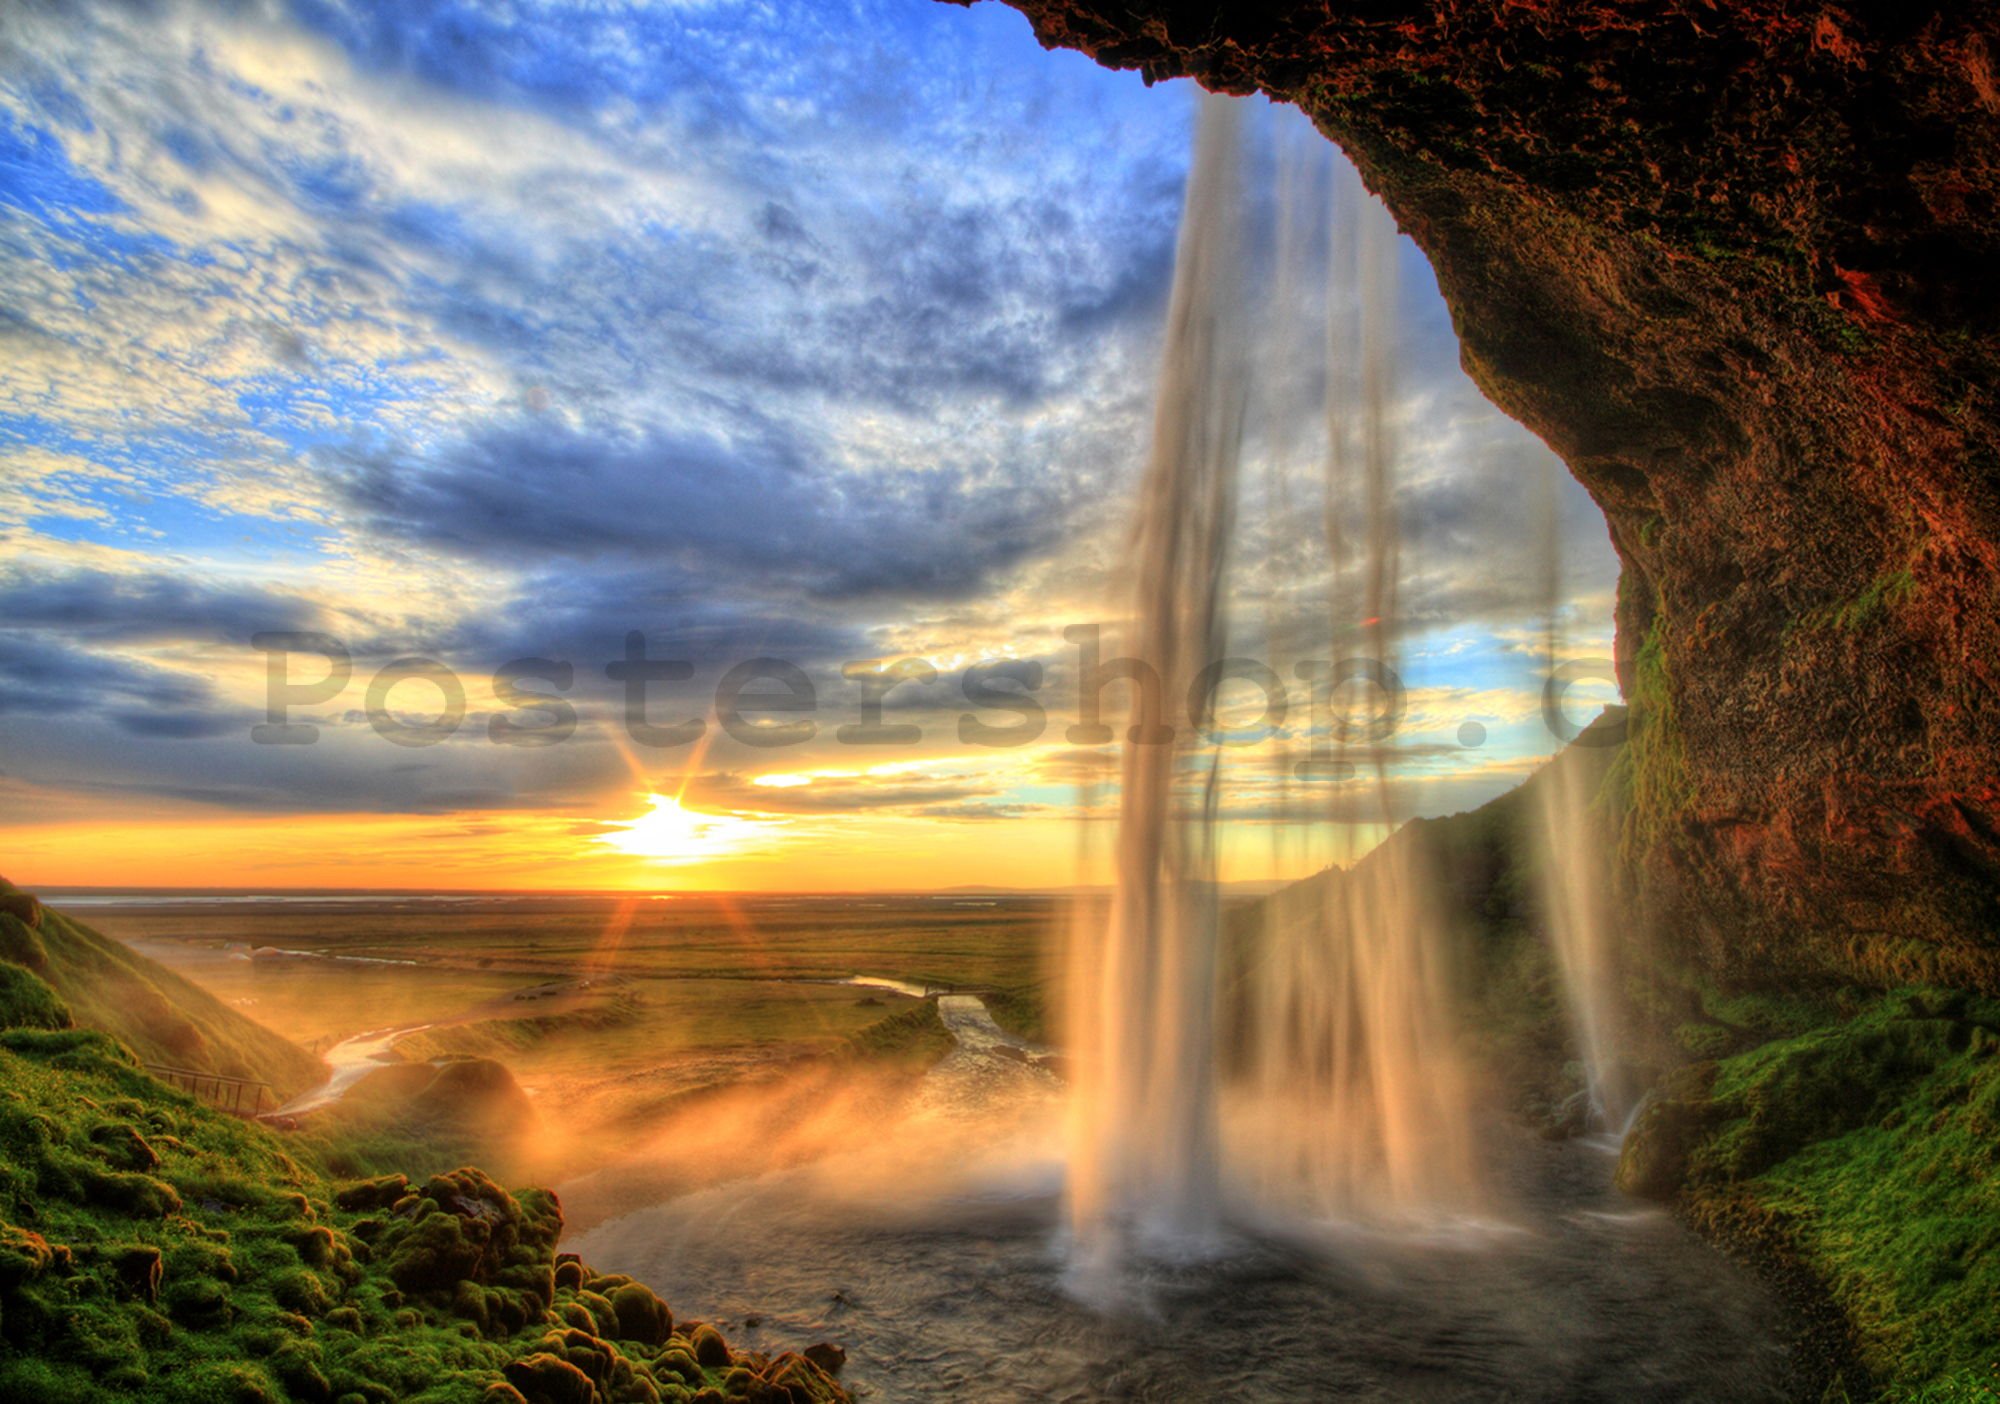 Fototapeta vliesová: Vodopád u západu slunce - 184x254 cm